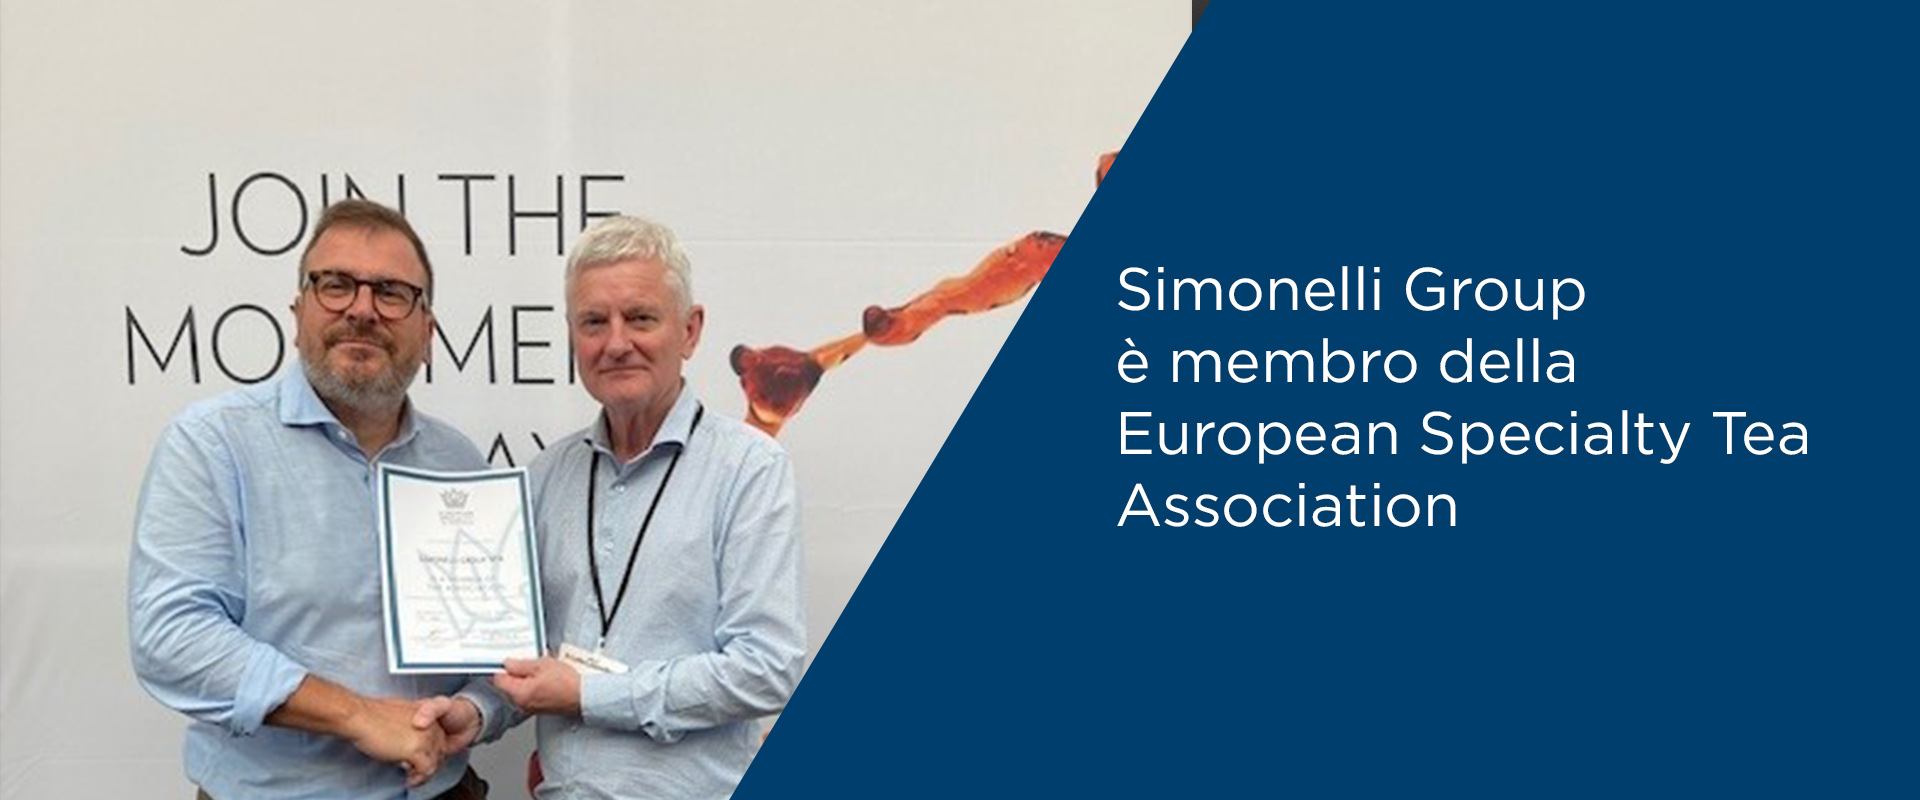 European Speciality Tea Association dà il bevenuto a Simonelli Group, nuovo membro dell’associazione